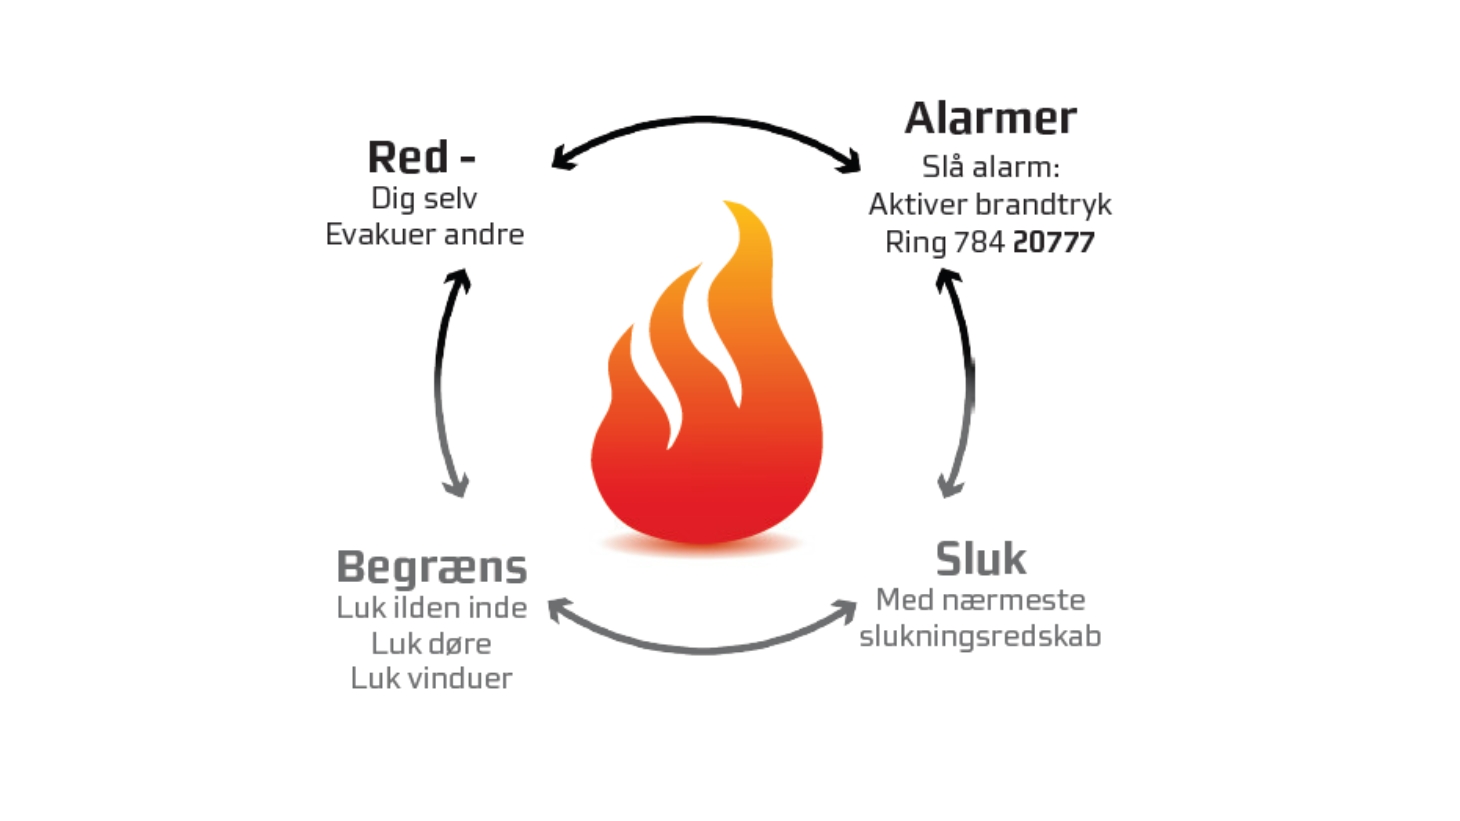 Diagram beskriver fire forskellige måder at forholde sig i tilfælde af brand. Red, alarmer, begræns, sluk.